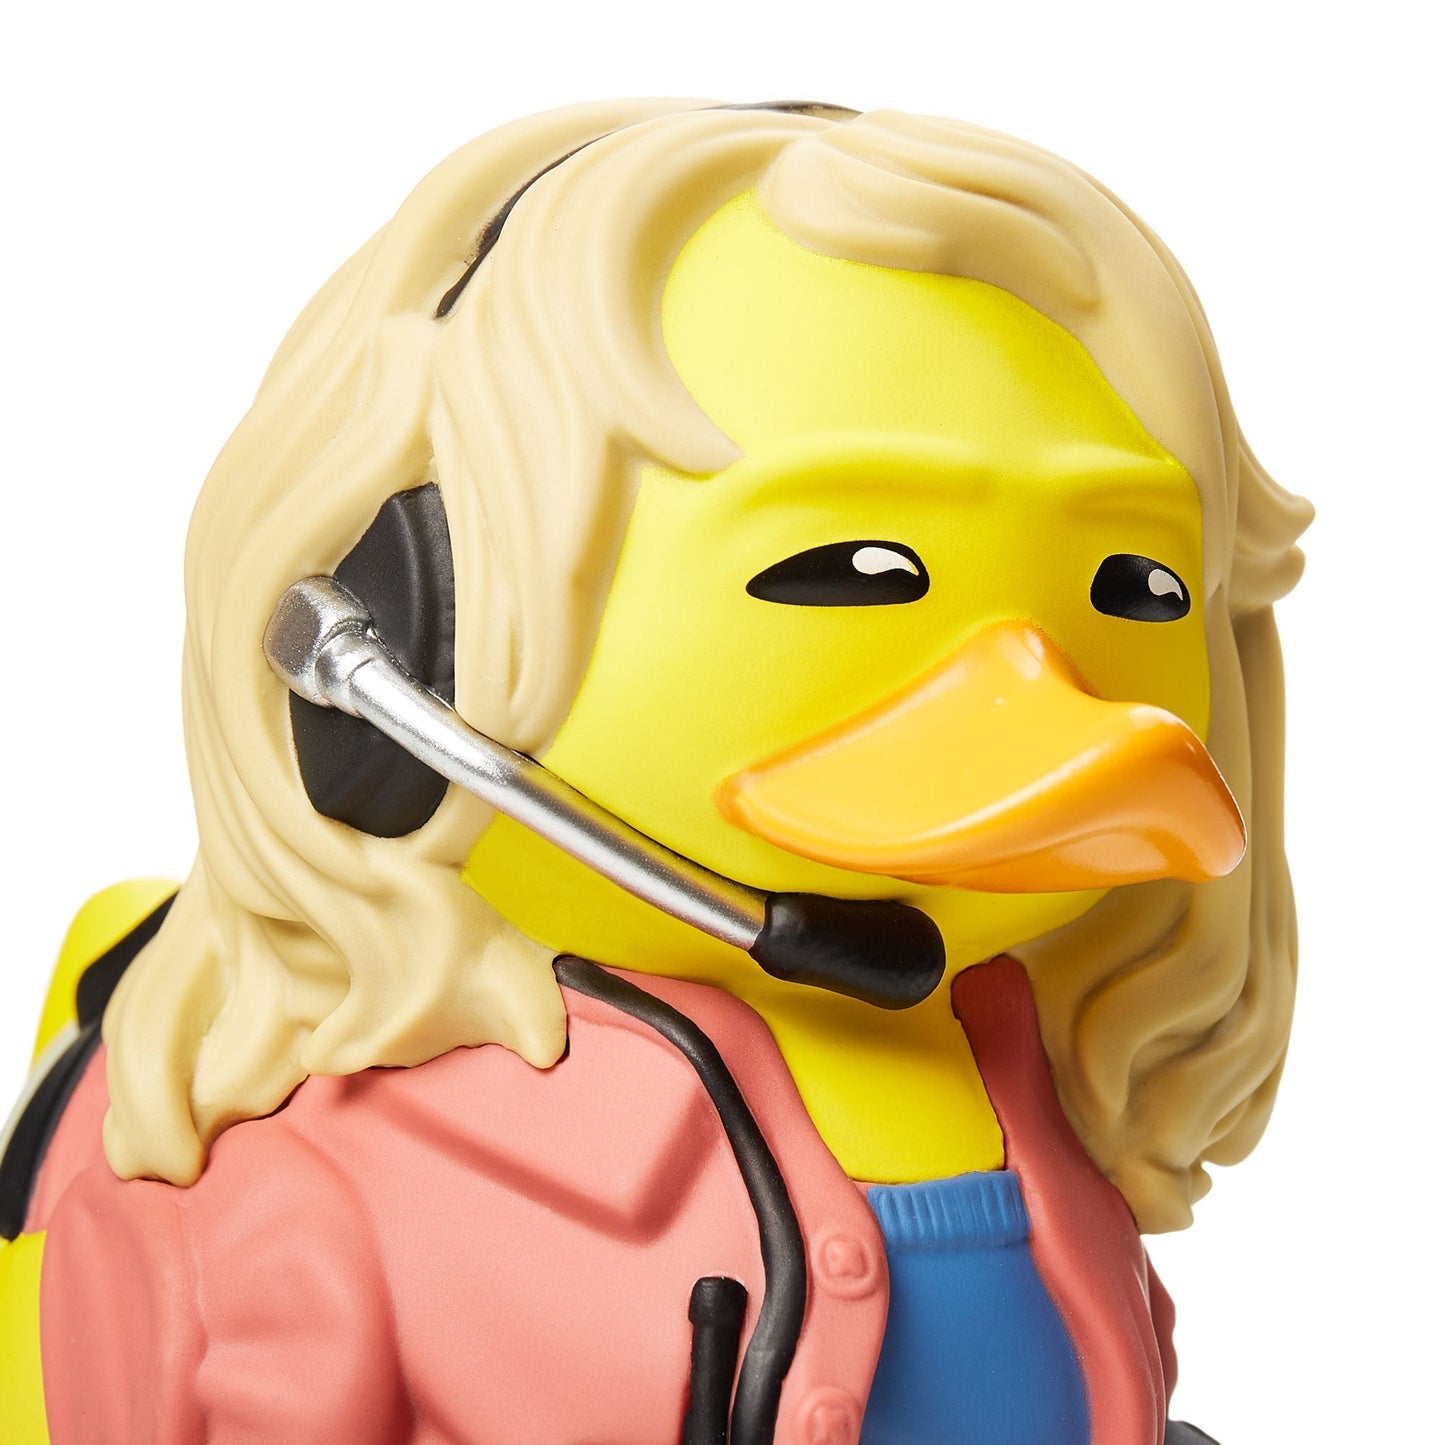 Duck Dra. Ellie Sattler